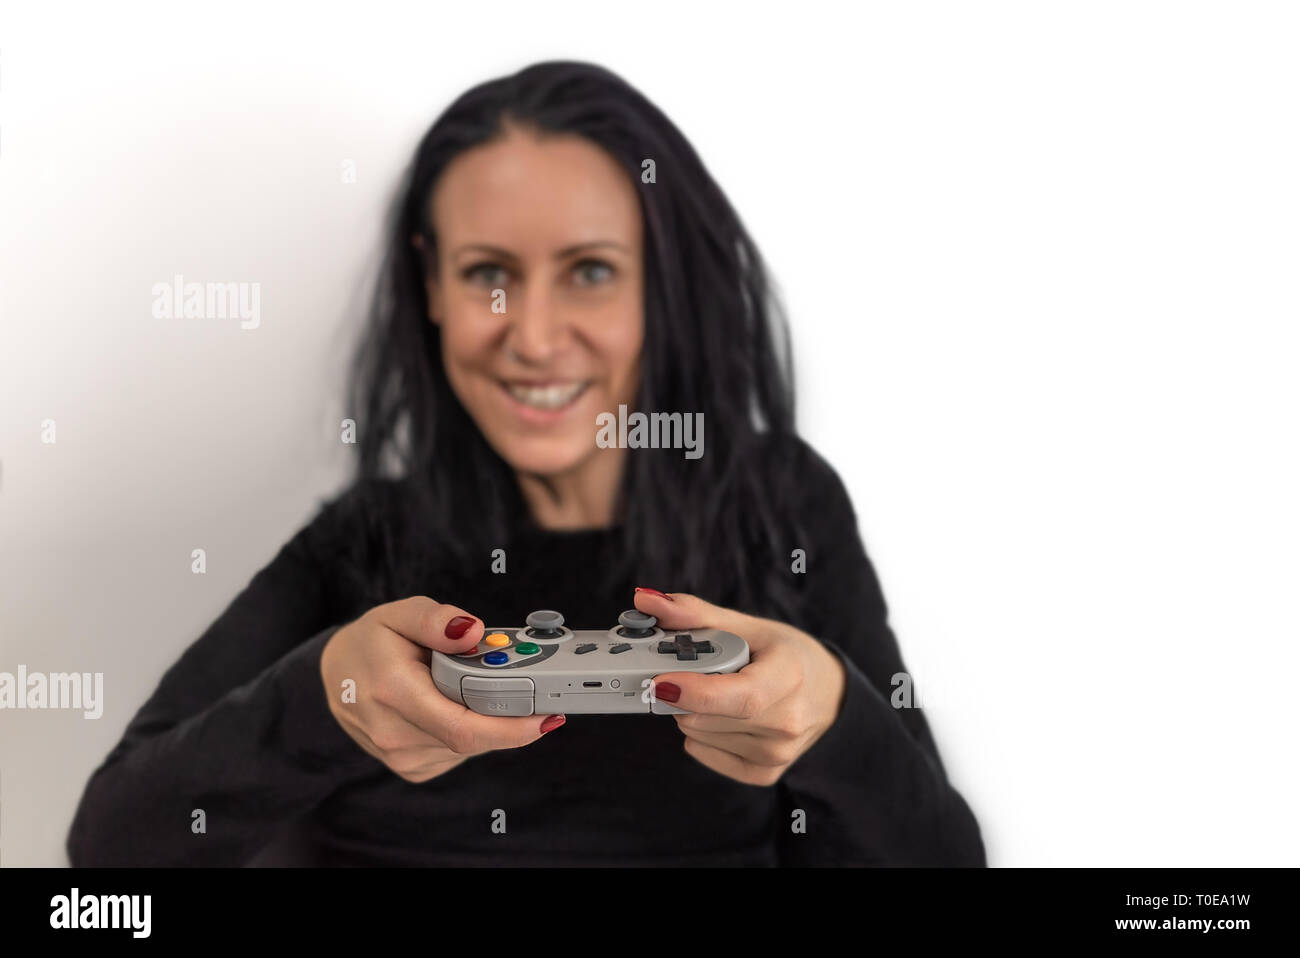 Junge Frau mit roten Nagellack spielen Video Game, das auf einem retro Wireless Gaming Controller mit einem glücklichen und konzentrierter Gesichtsausdruck Stockfoto